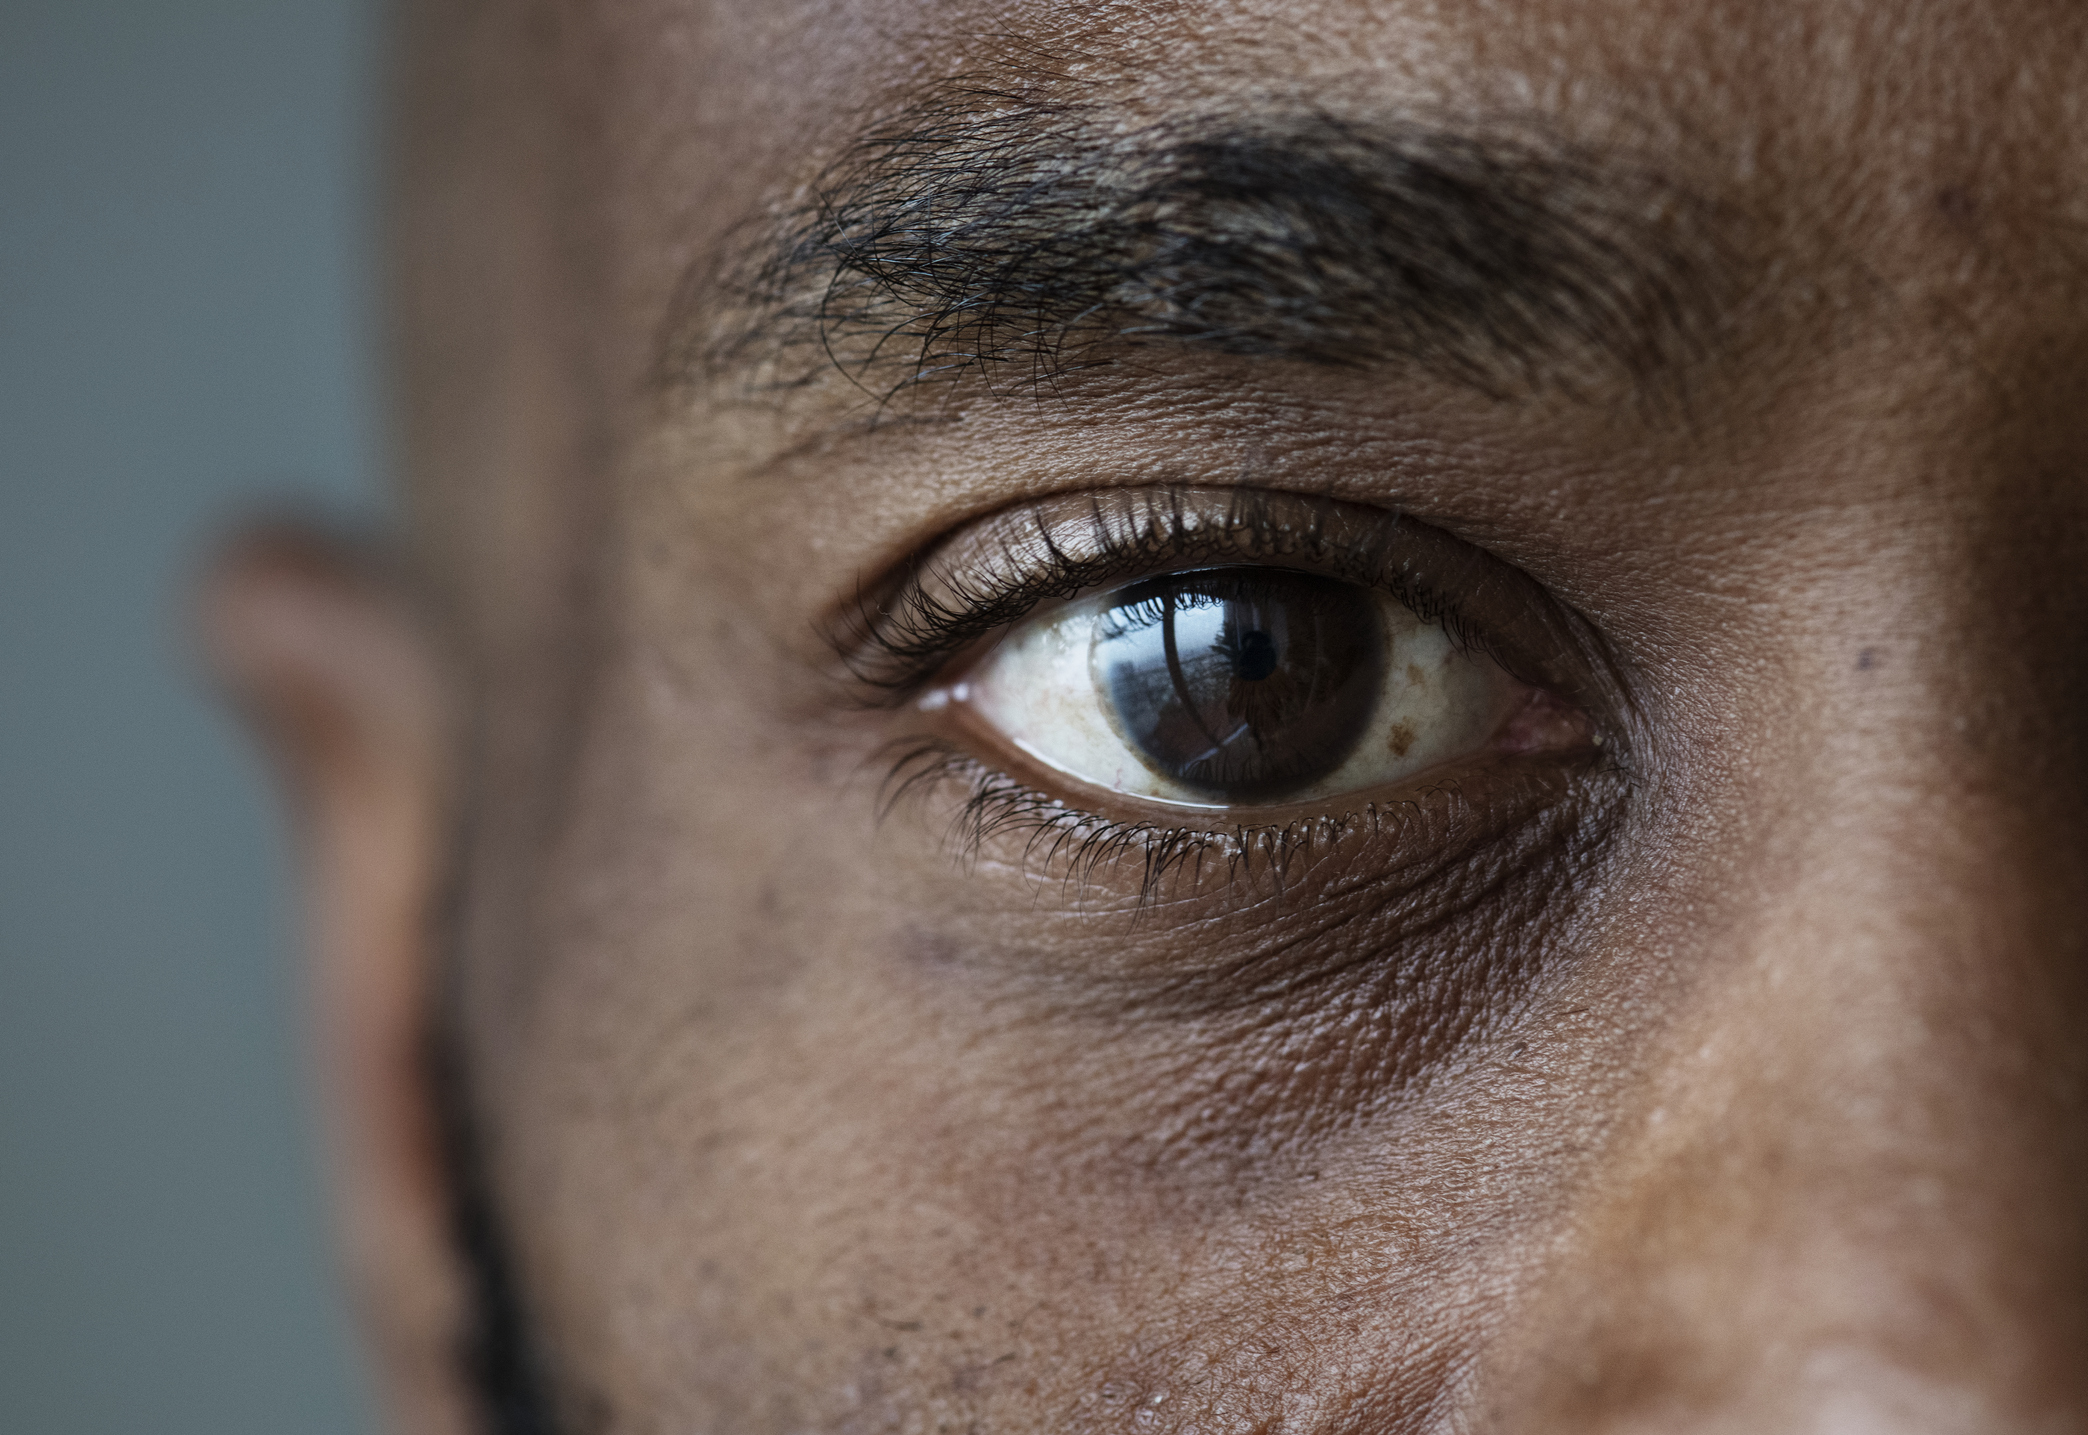 A close up of an eye on a man.